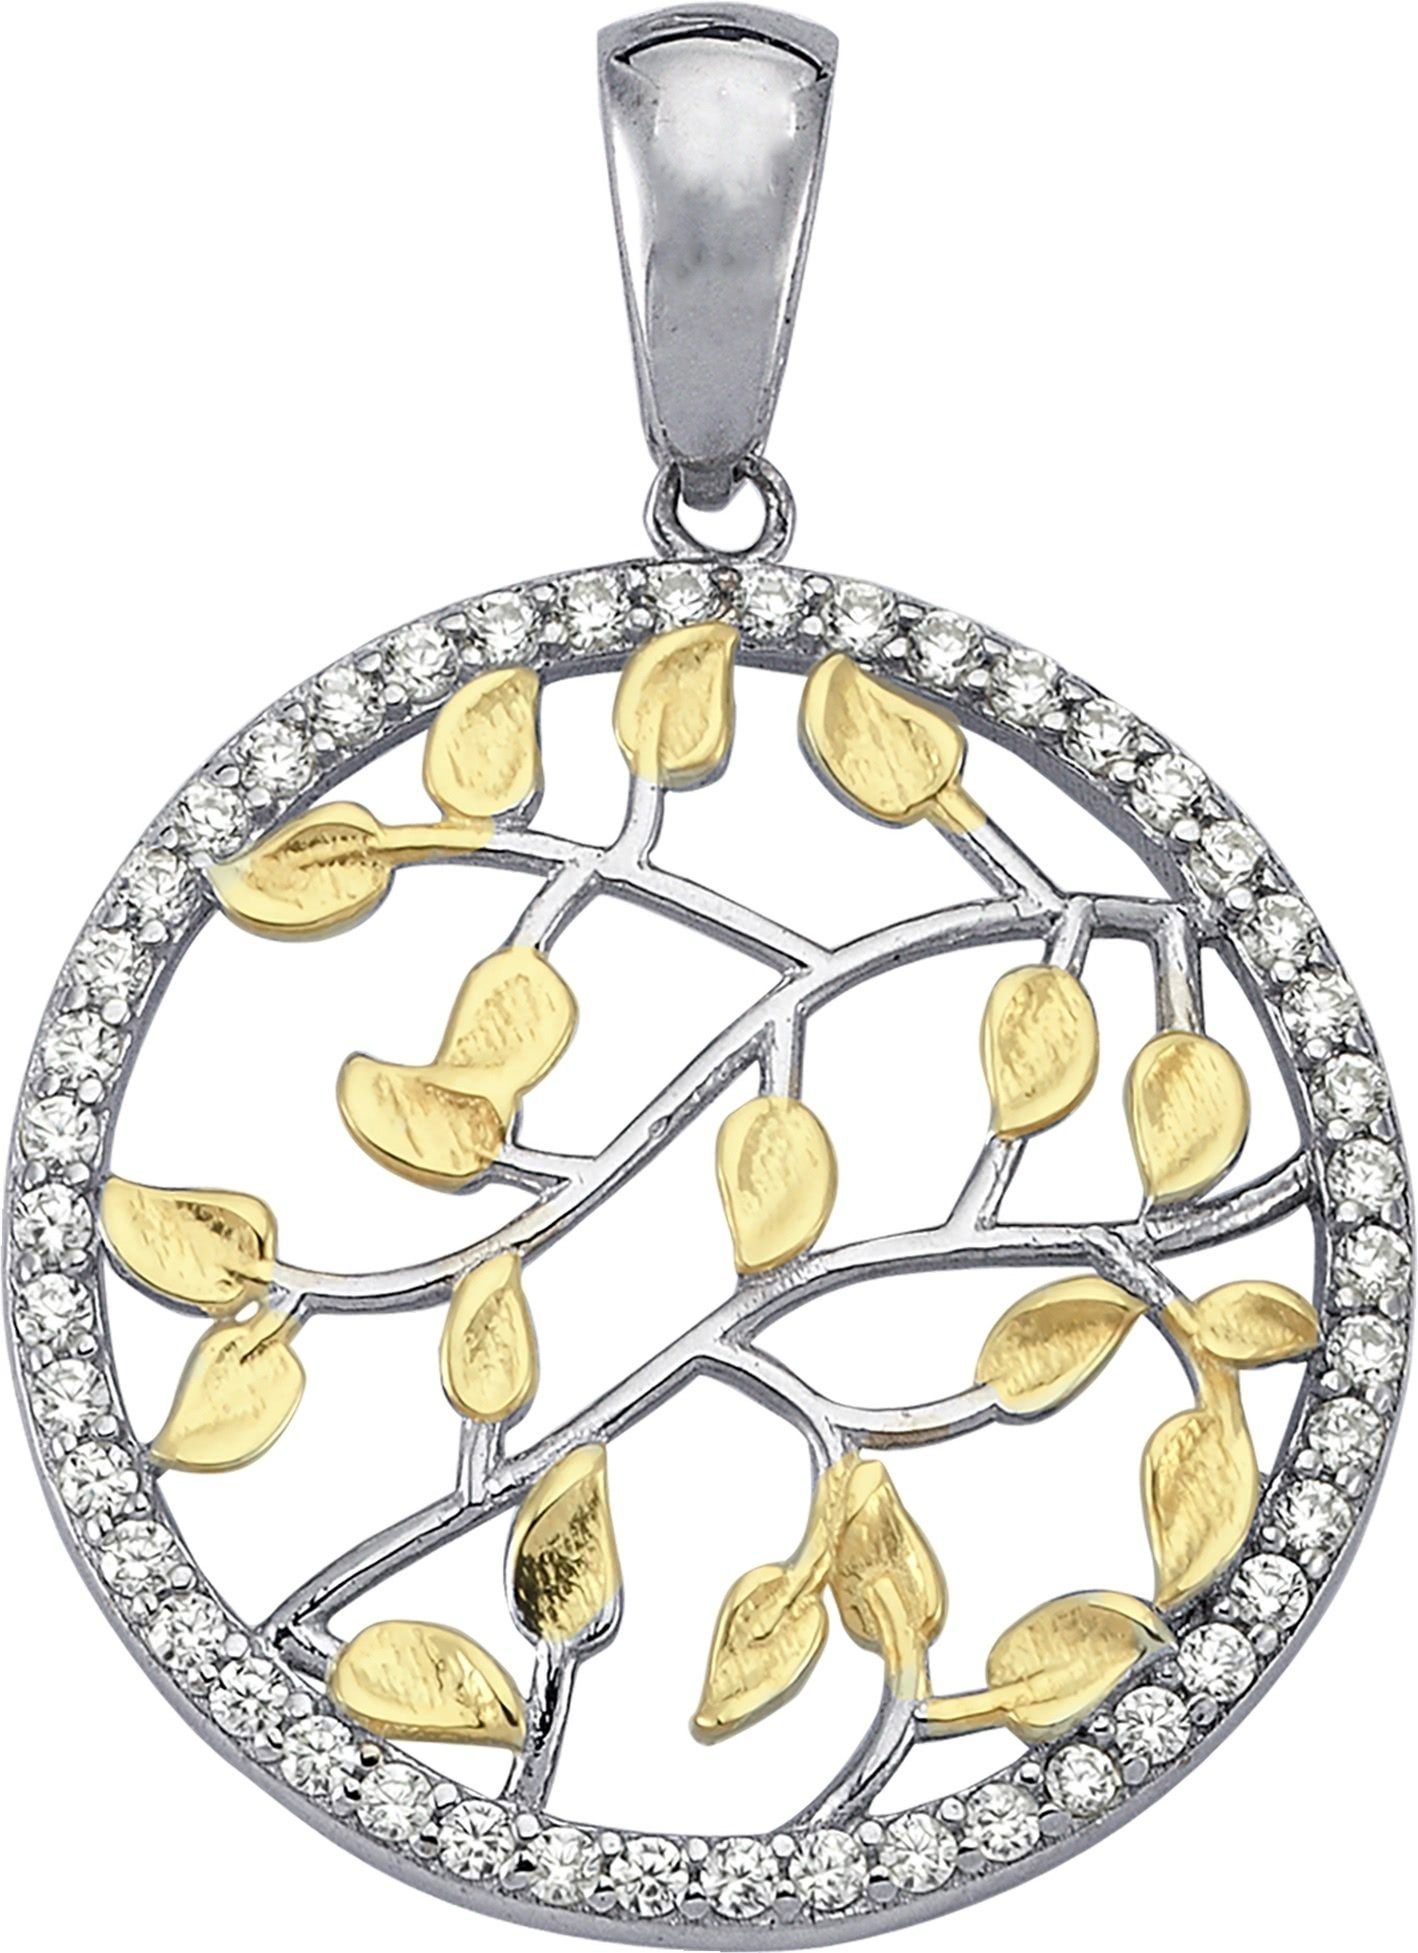 Balia Kettenanhänger Balia Kettenanhänger für Damen 925 Silber, Kettenanhänger ca. 3,2cm, 925 Sterling Silber, vergoldet (Gelbgold)